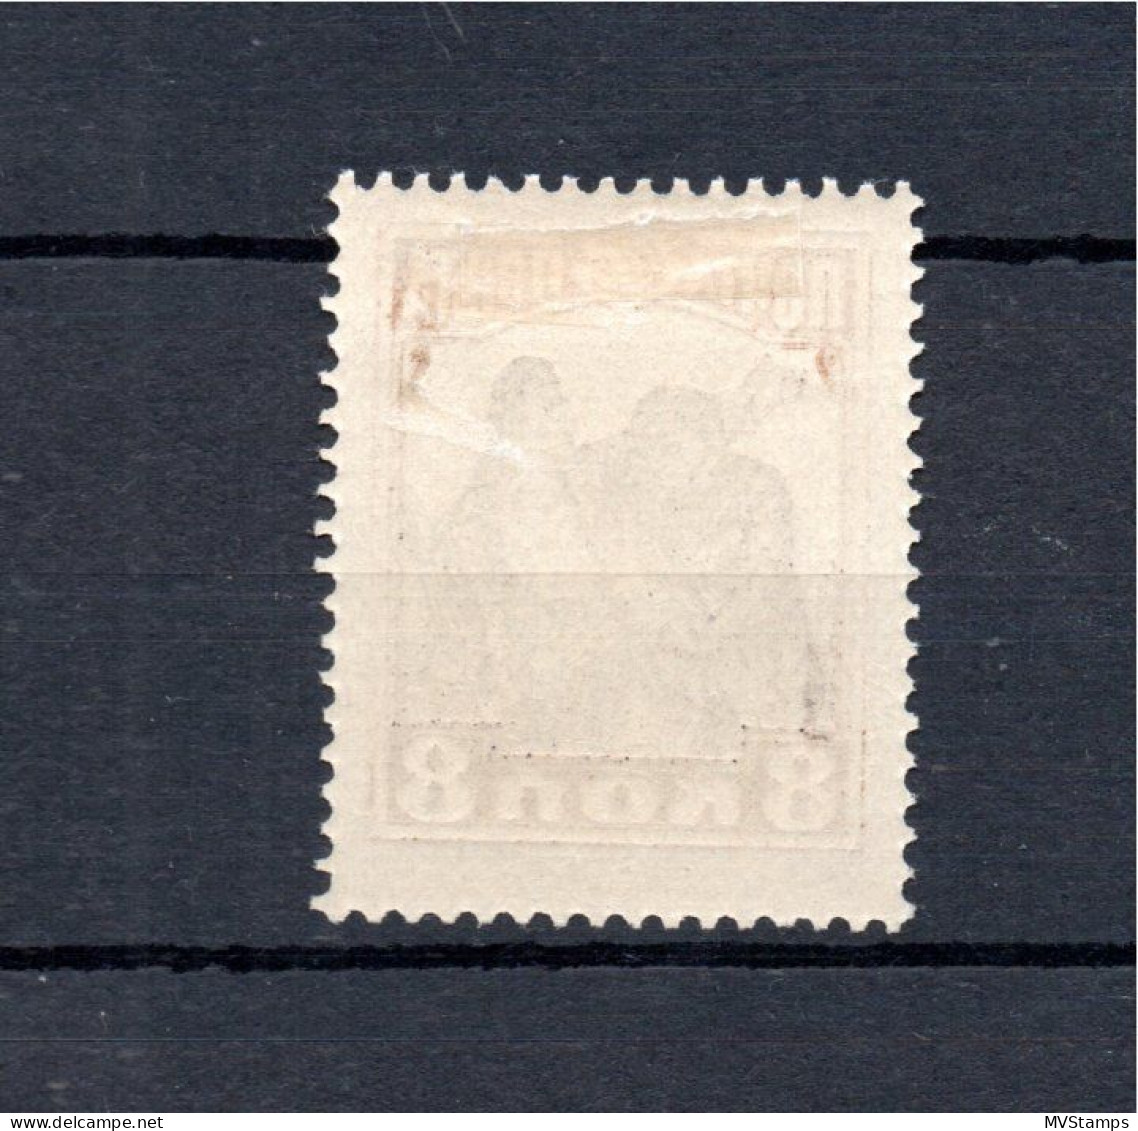 Russia 1927 Old 8 Kop.October-Revolution Stamp (Michel 331) Nice MLH - Ongebruikt